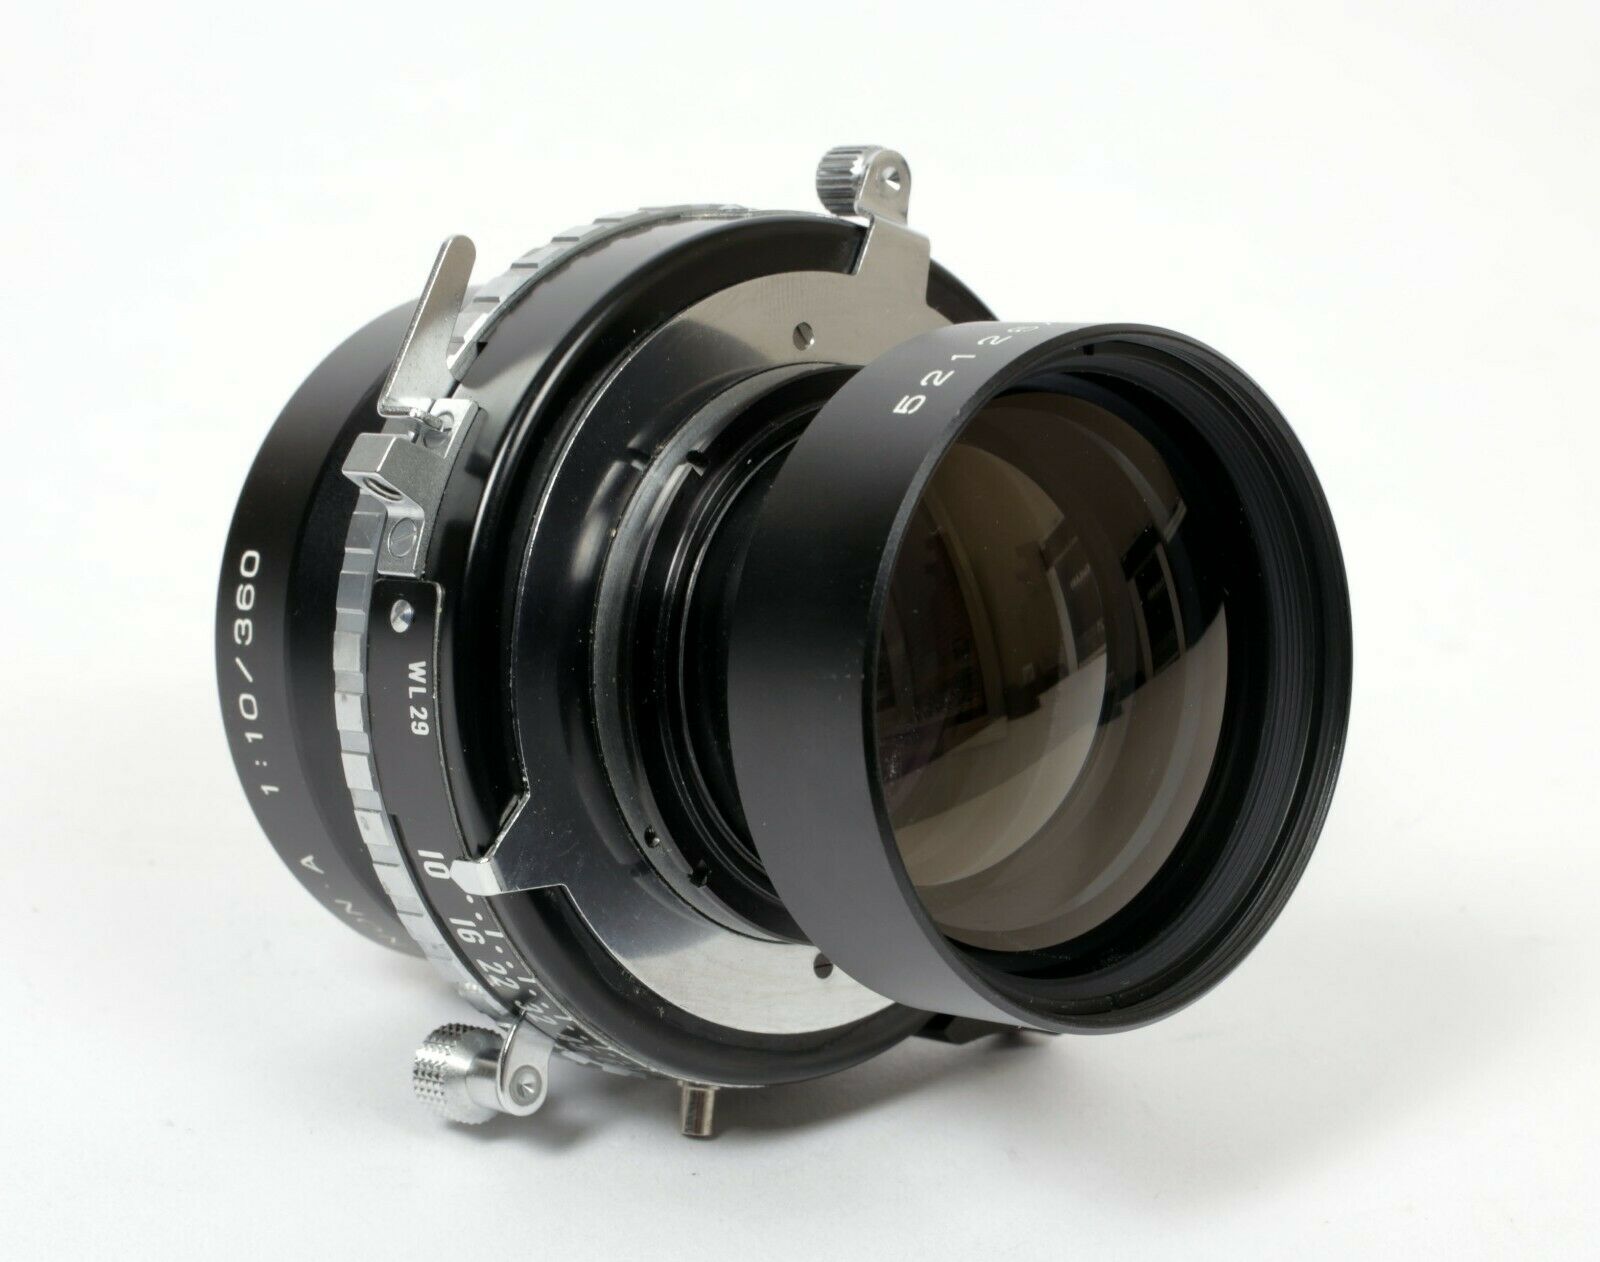 Fuji EBC A 360mm F10 Lens in Copal #1 Shutter (Covers 11X14) #264